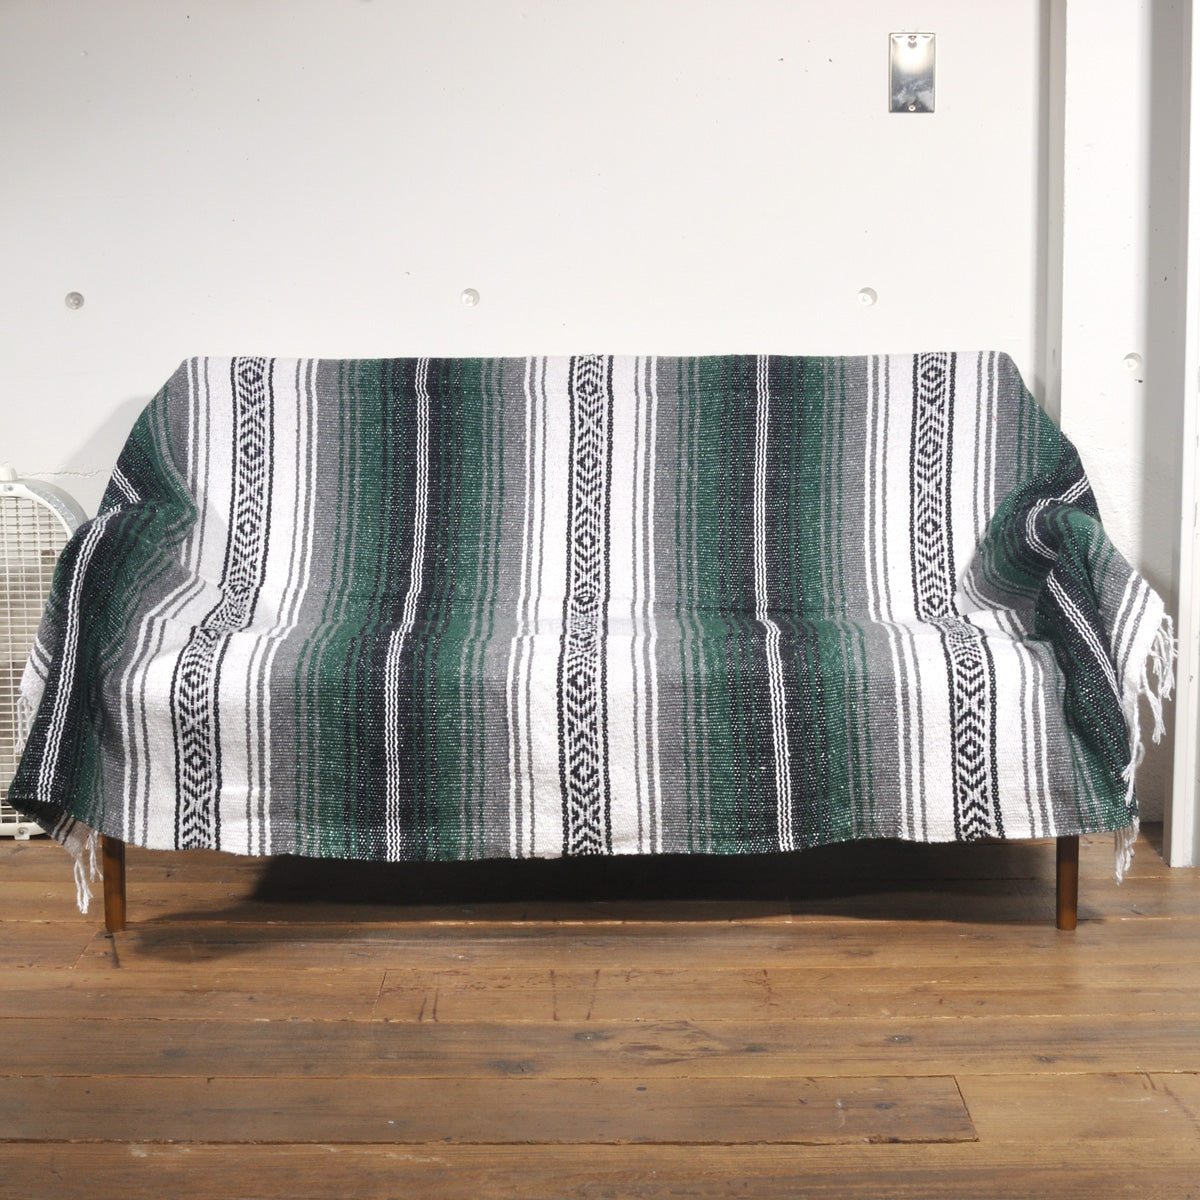 ラグフォレスト(Rug Forest)スタンダードファルサ メキシカンブランケット Standard Falsa Mexican Blanket[約185×135cm]DK.GREEN